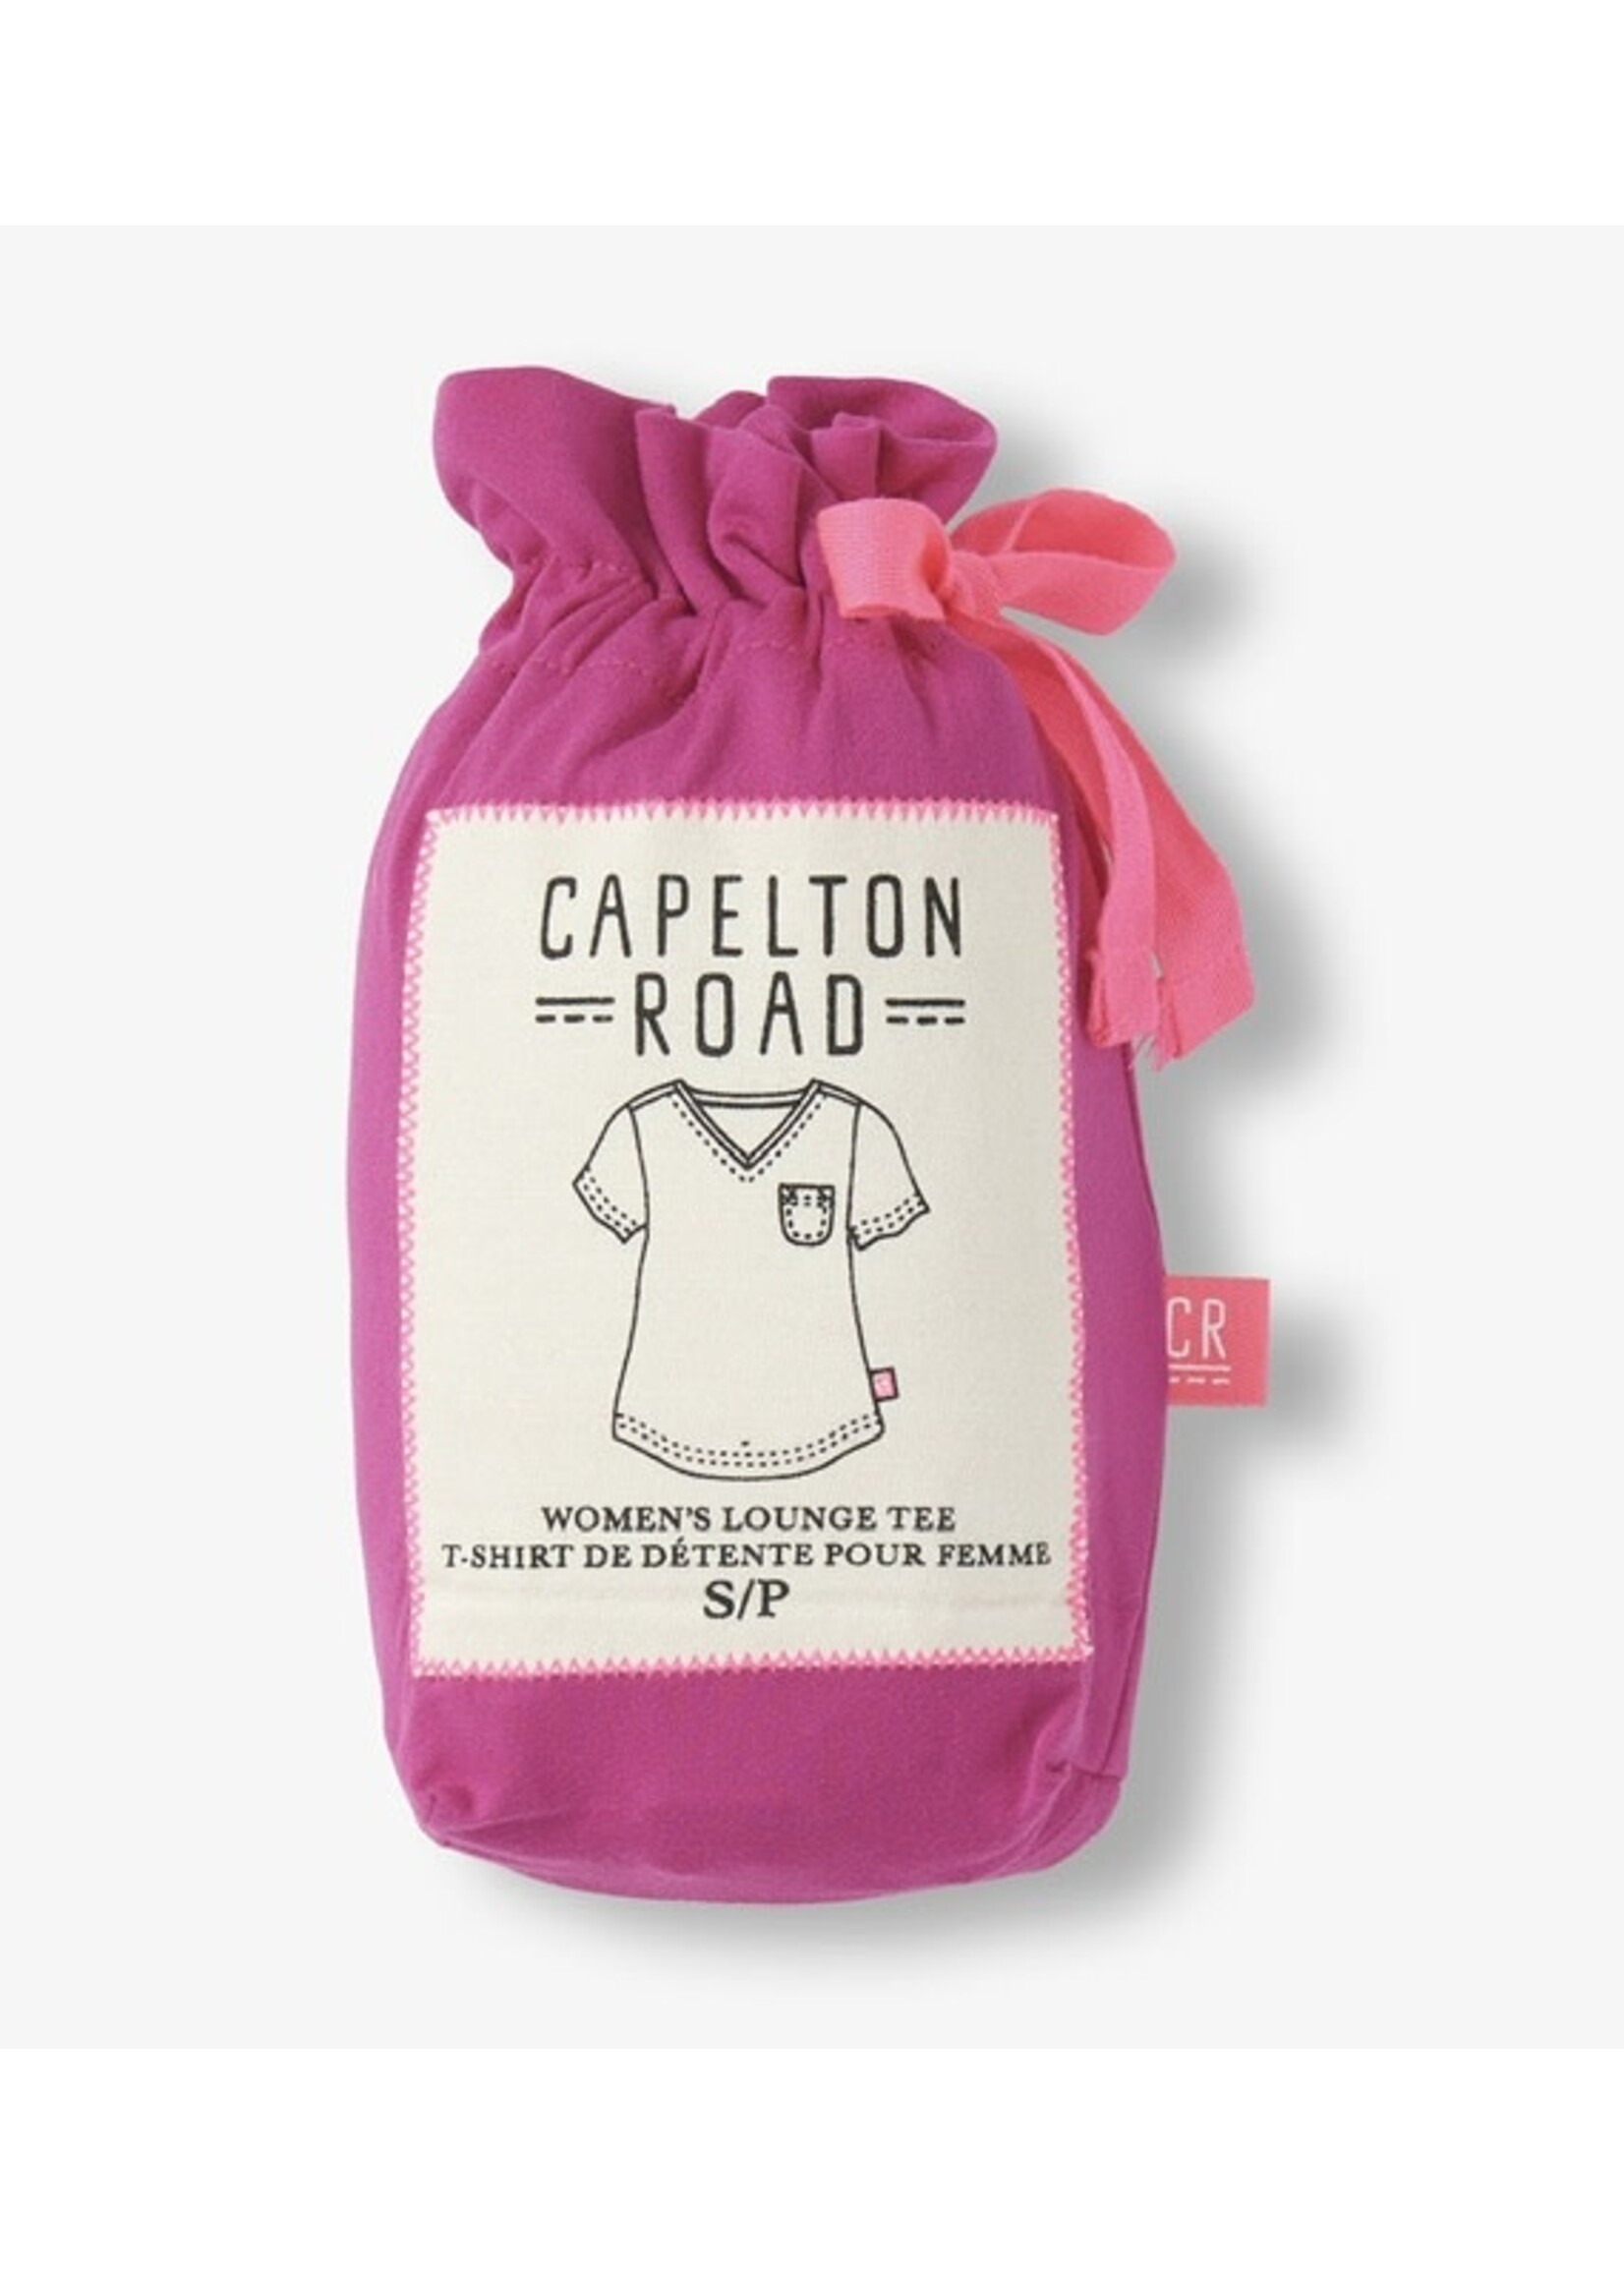 Capleton Road Rose Violet V-Neck Tee in a Bag